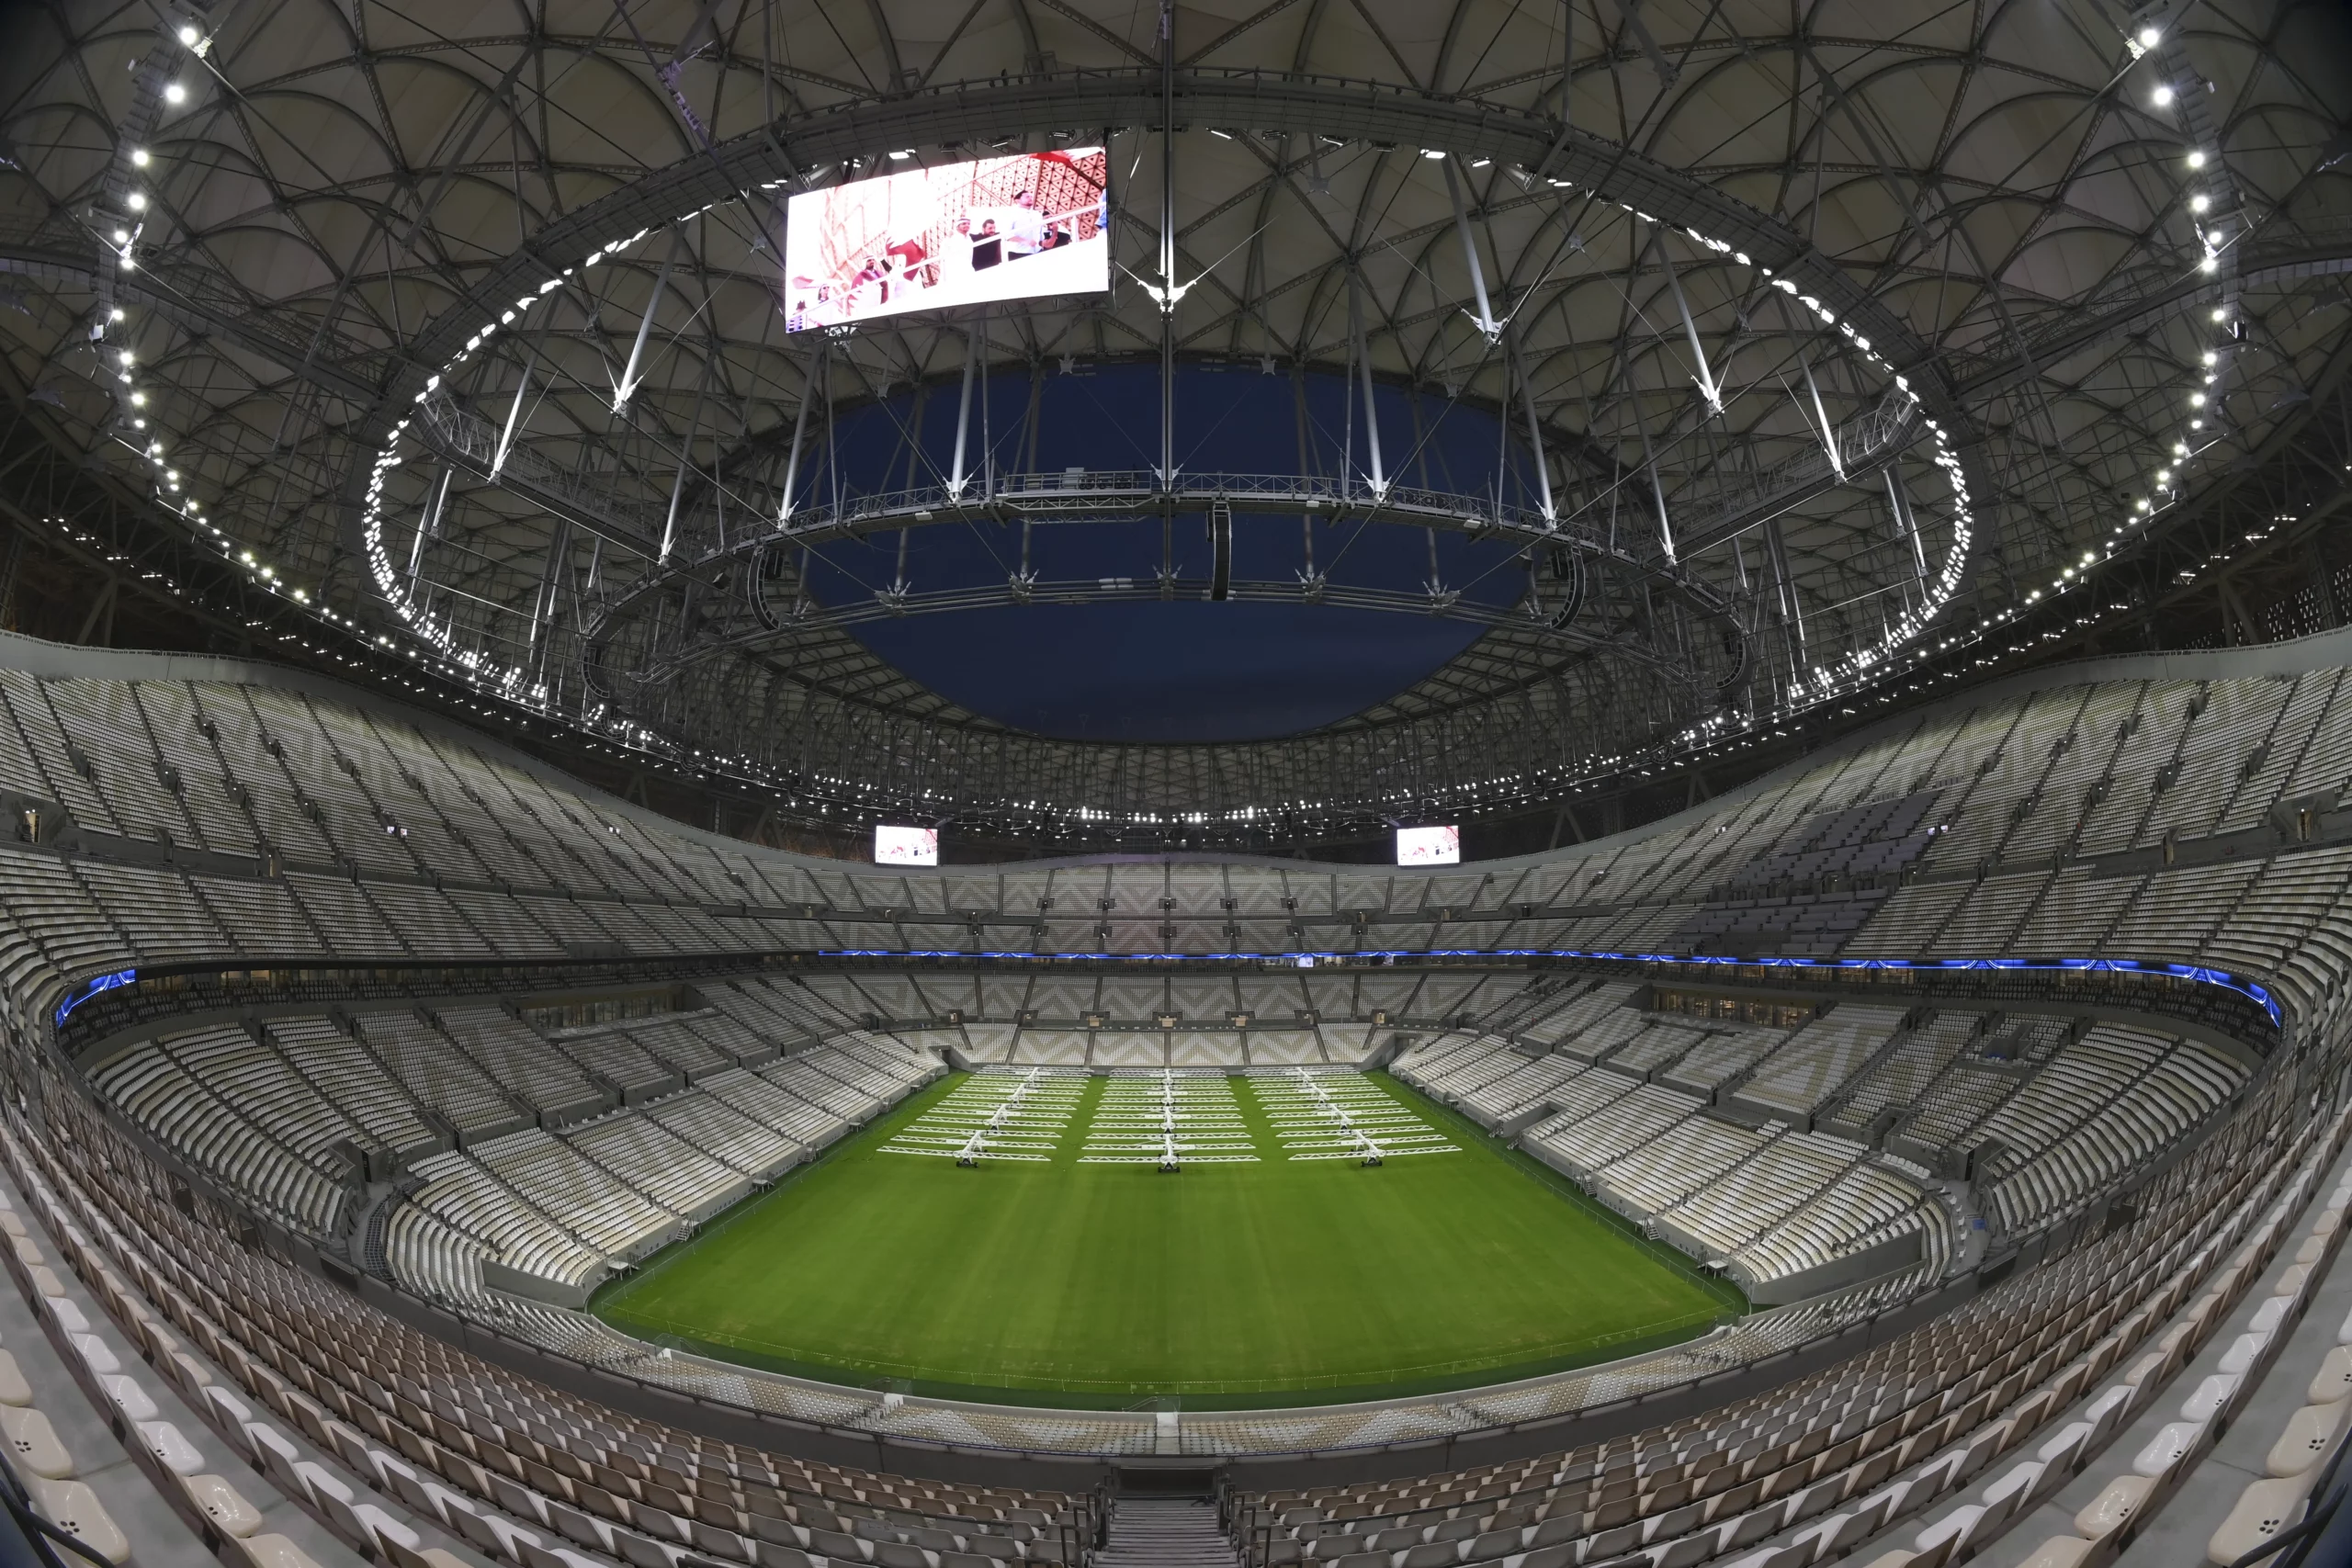 Découvrez les 8 stades magnifiques de la Coupe du monde 2022